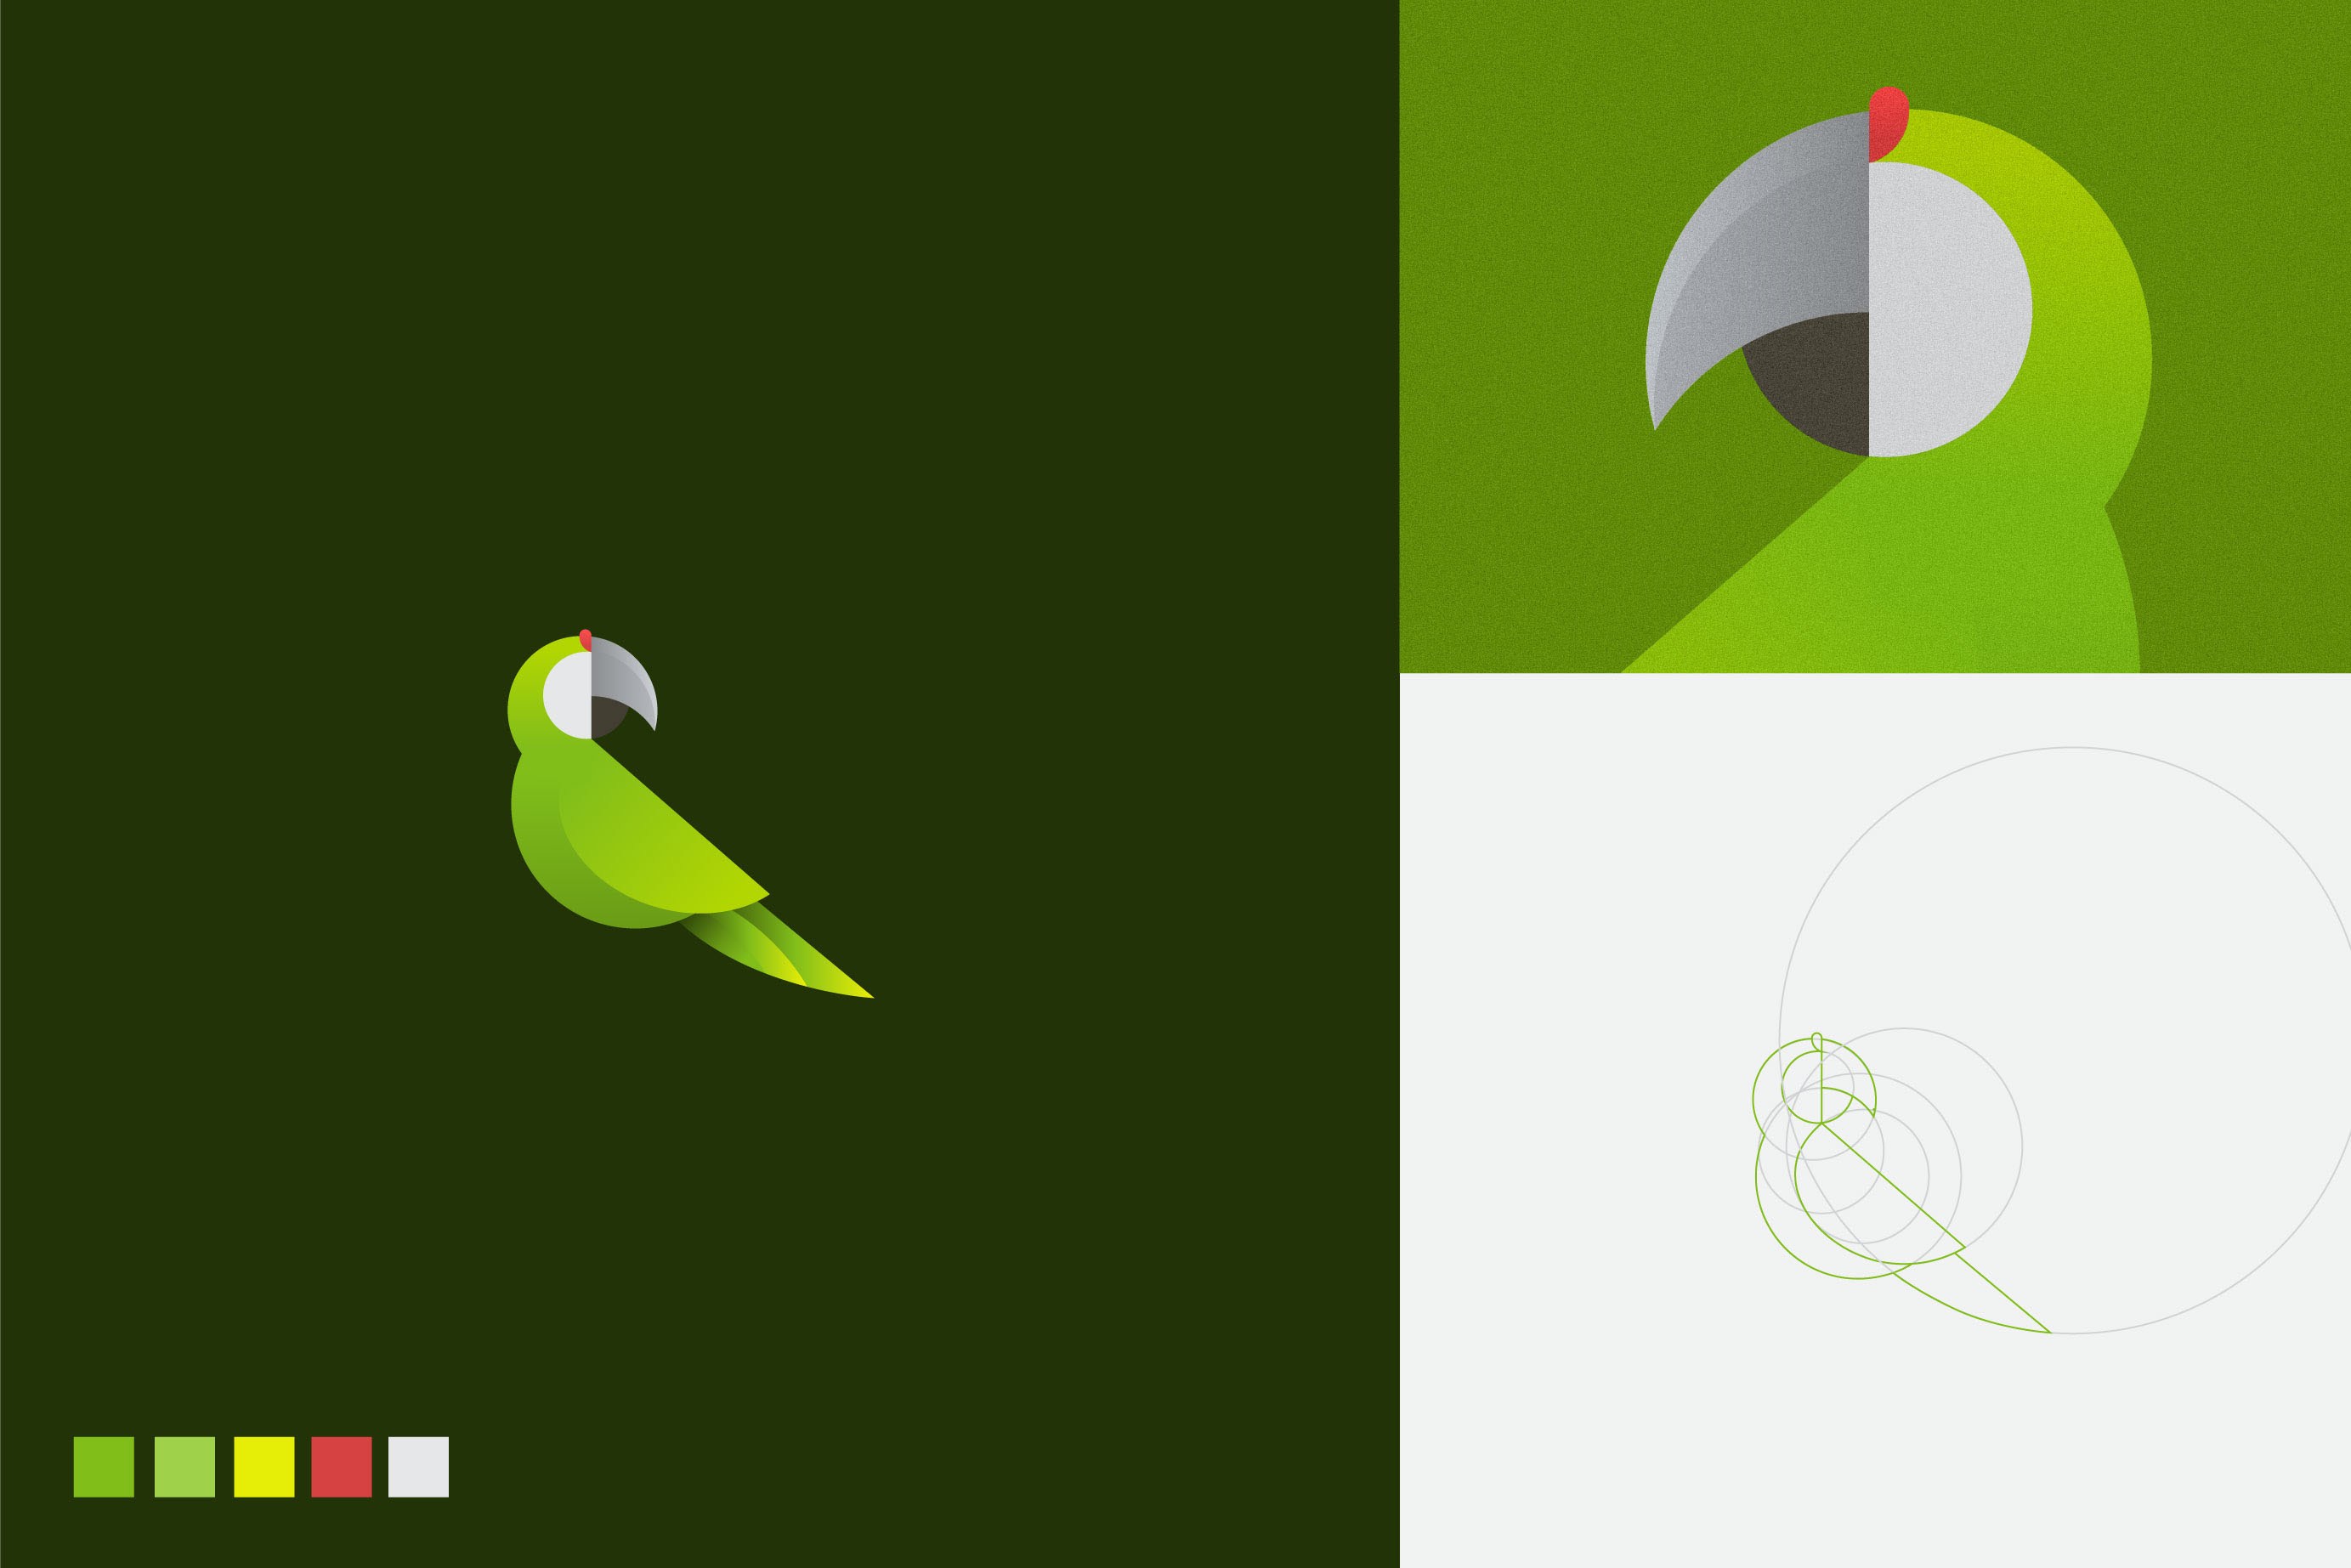 绿色鸟儿logo-黄金分割比例设计的几何图形动物logo设计图片欣赏-上海logo设计公司